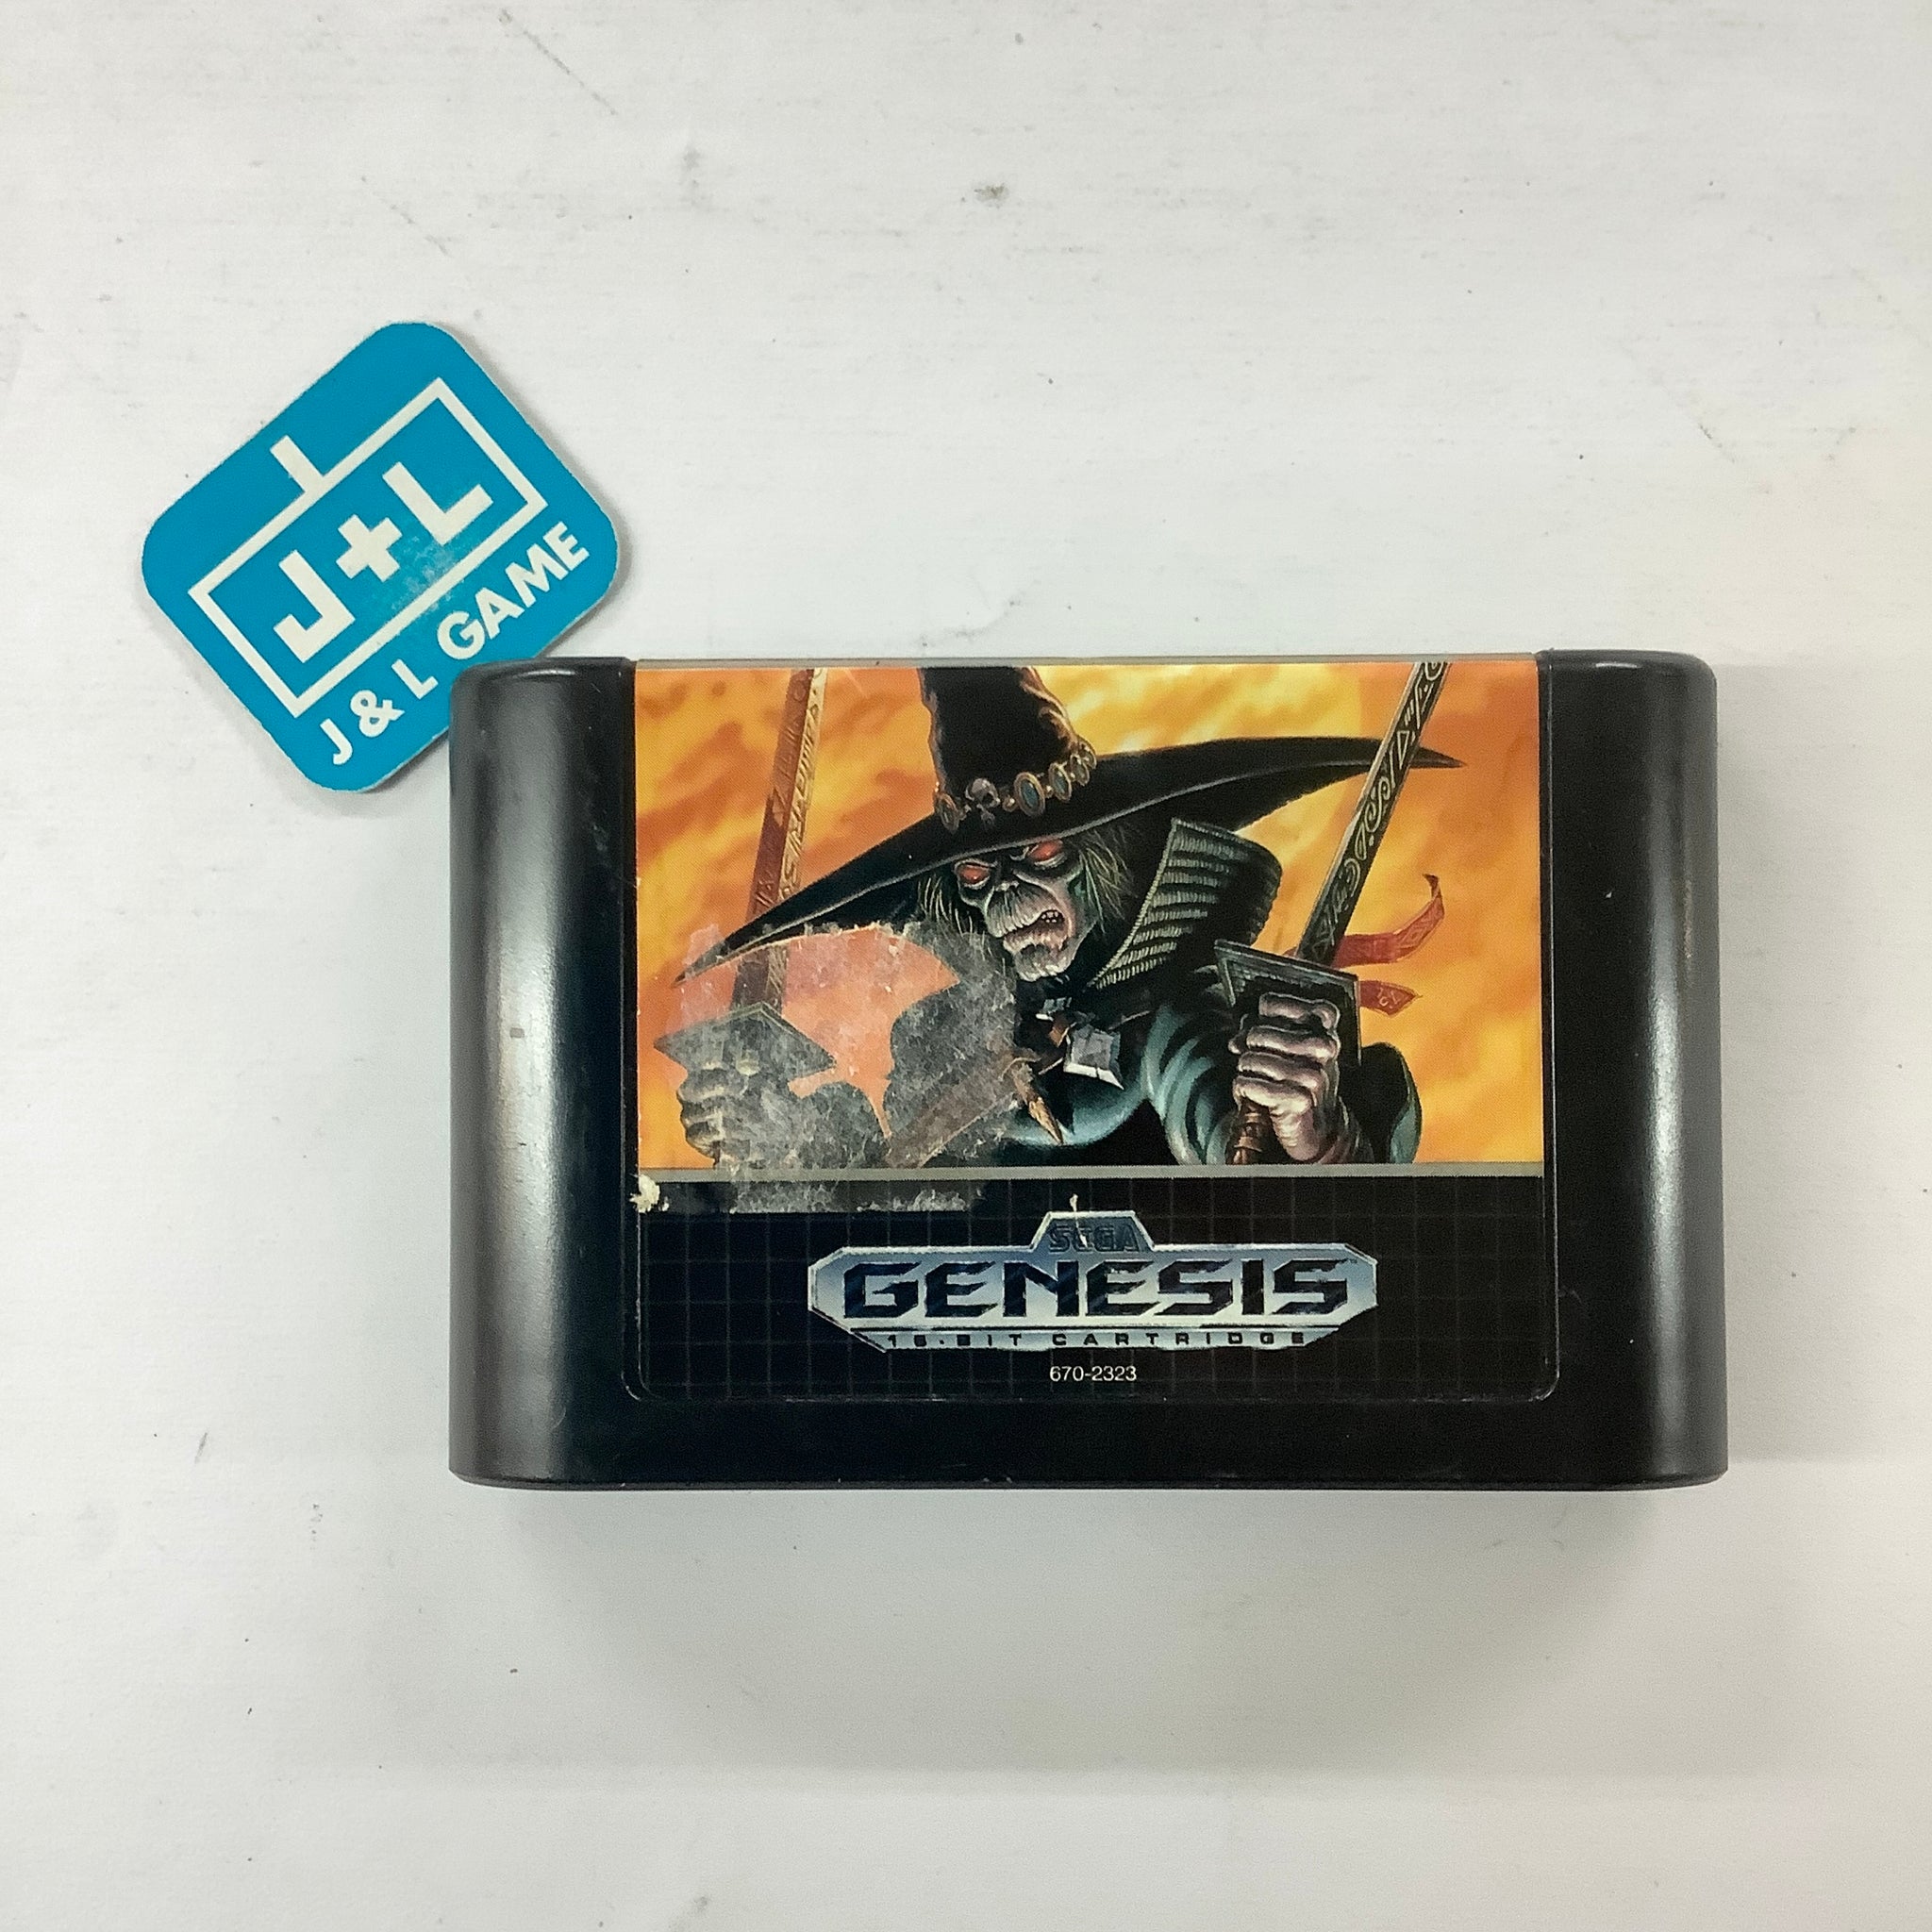 Chakan - (SG) SEGA Genesis [Pre-Owned] Video Games Sega   